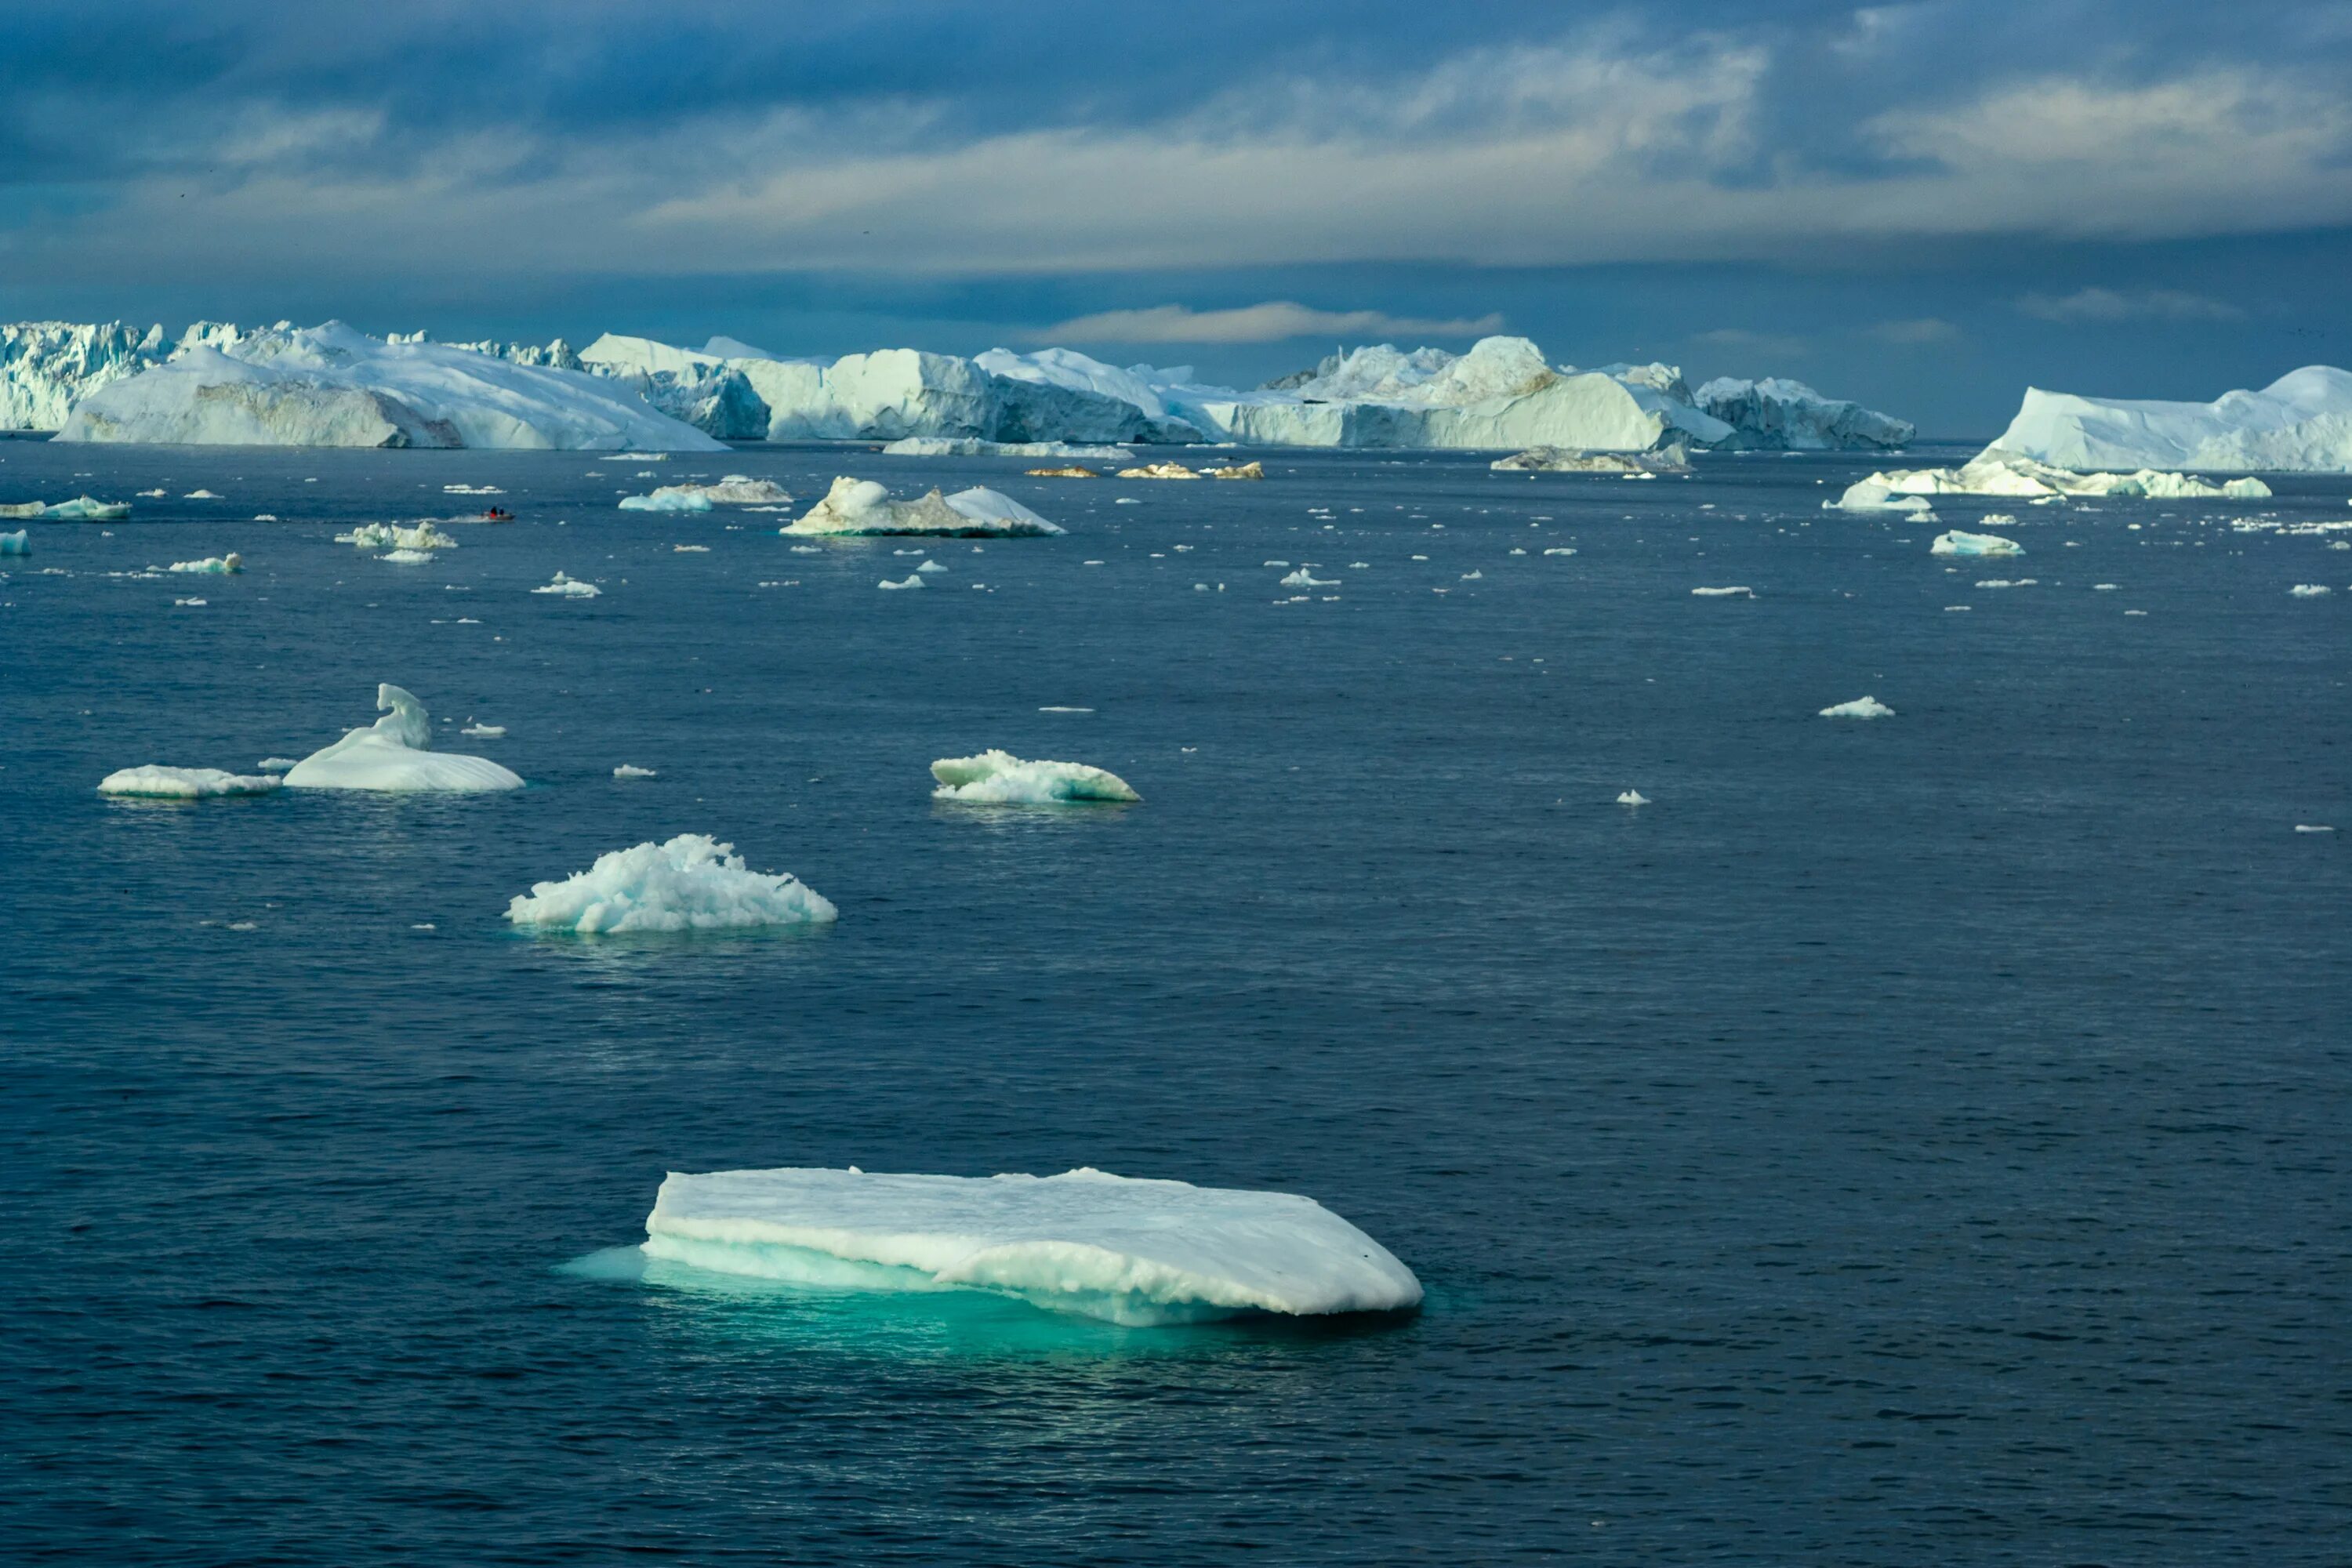 Арктика Северный Ледовитый океан. Северно Ледовитый океан США. Торосы Карское море. Северо Ледовитый океан фото. Крупное море северного ледовитого океана